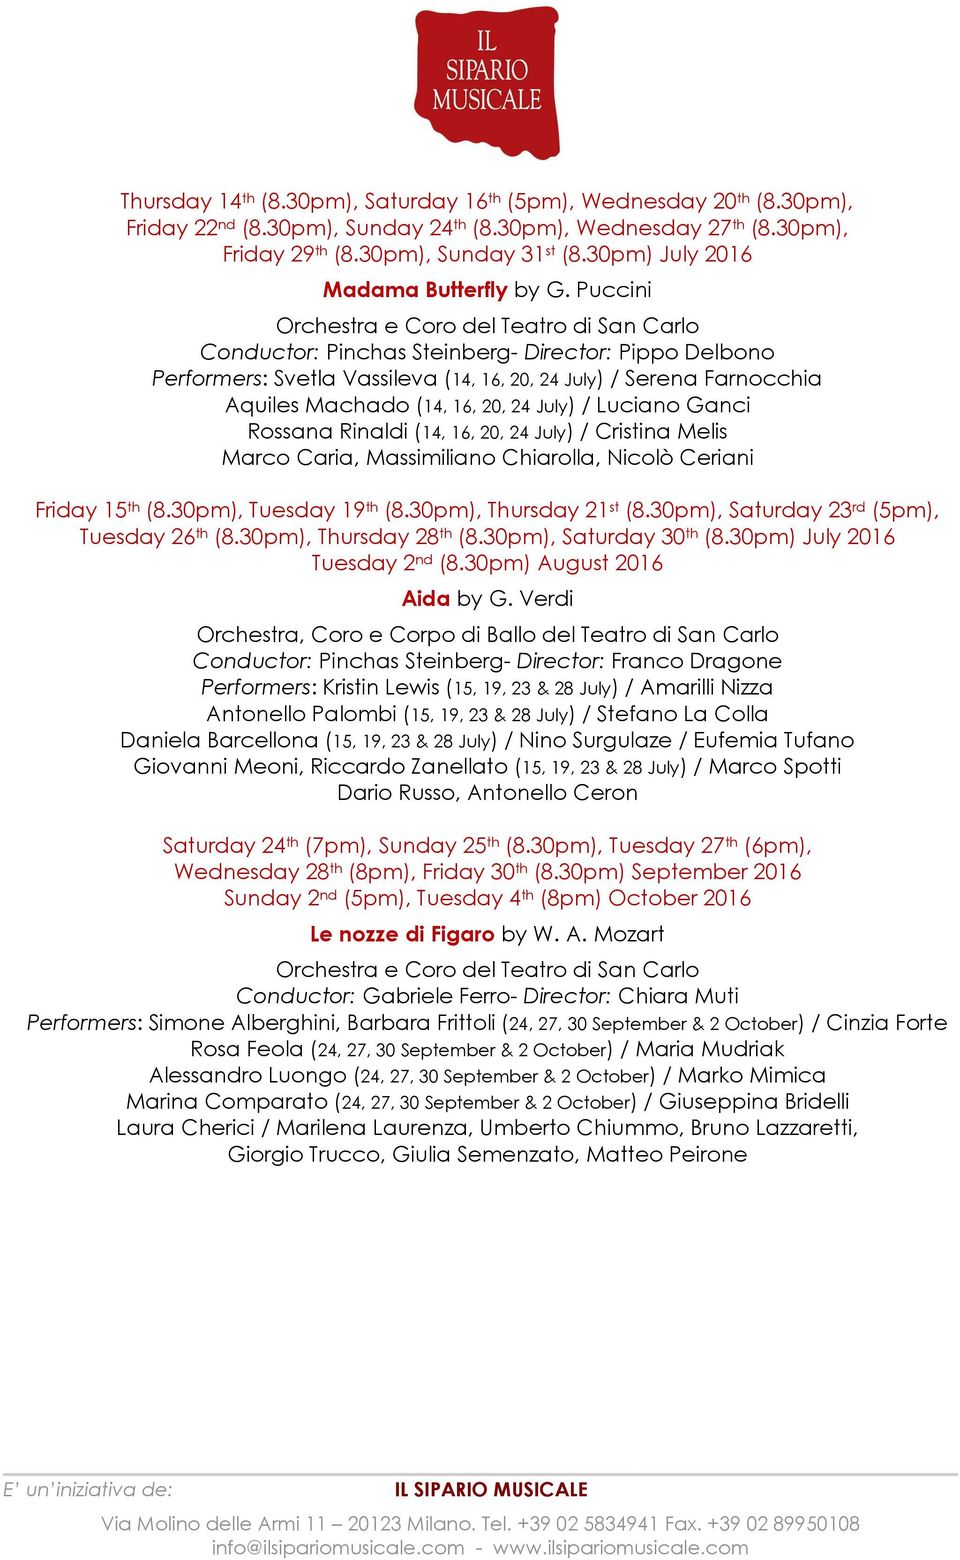 Puccini Conductor: Pinchas Steinberg- Director: Pippo Delbono Performers: Svetla Vassileva (14, 16, 20, 24 July) / Serena Farnocchia Aquiles Machado (14, 16, 20, 24 July) / Luciano Ganci Rossana